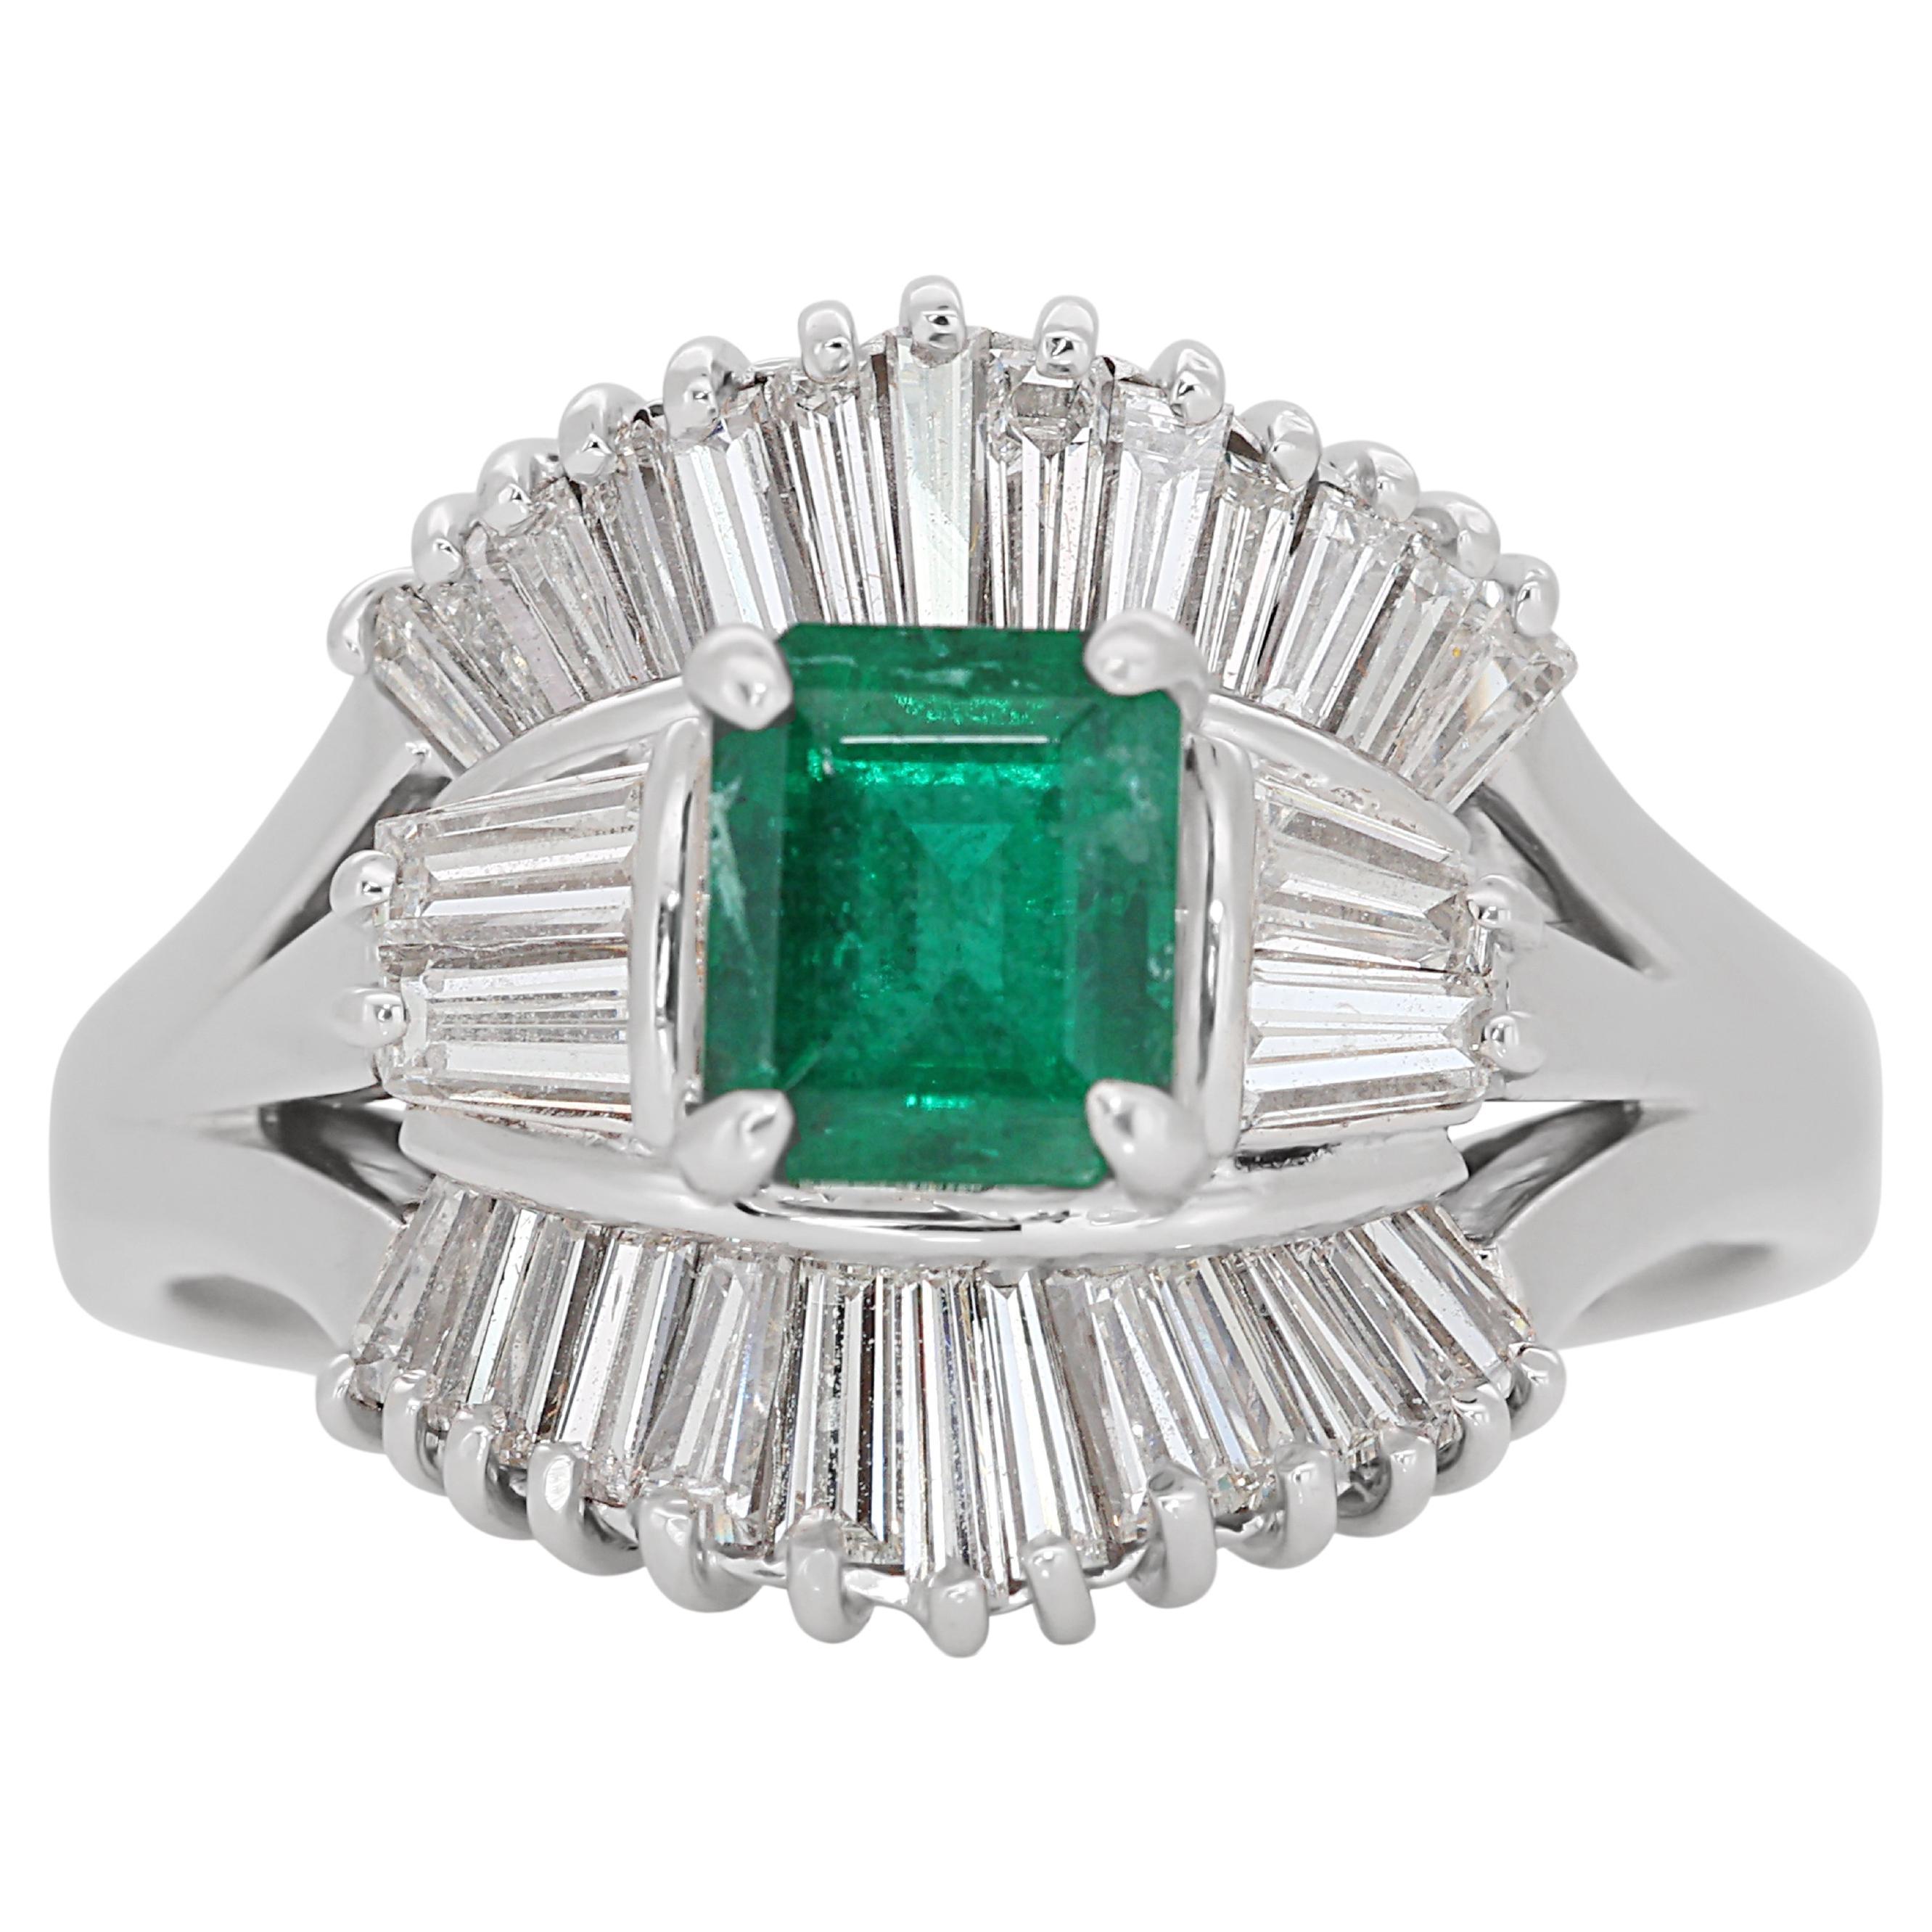 Atemberaubender Halo-Ring aus 18 Karat Weißgold mit 2,08 Karat Smaragd und Diamanten - IGI-zertifiziert